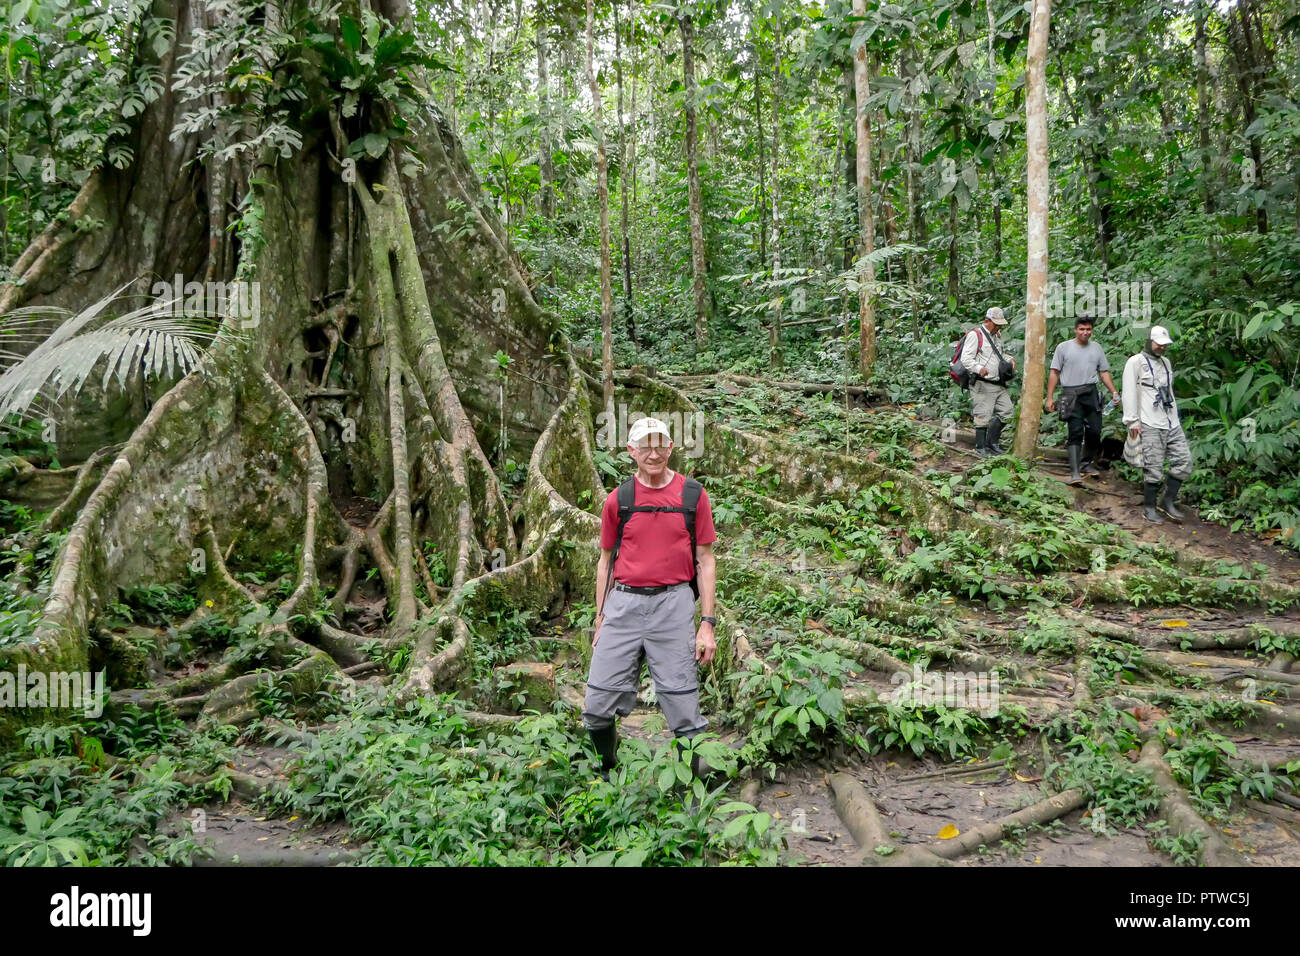 Amazon National Park, Perù, Sud America. Uomo in piedi con le radici di un grande albero di Ficus, con altri turisti e guide turistiche a piedi da. (Per la edi Foto Stock